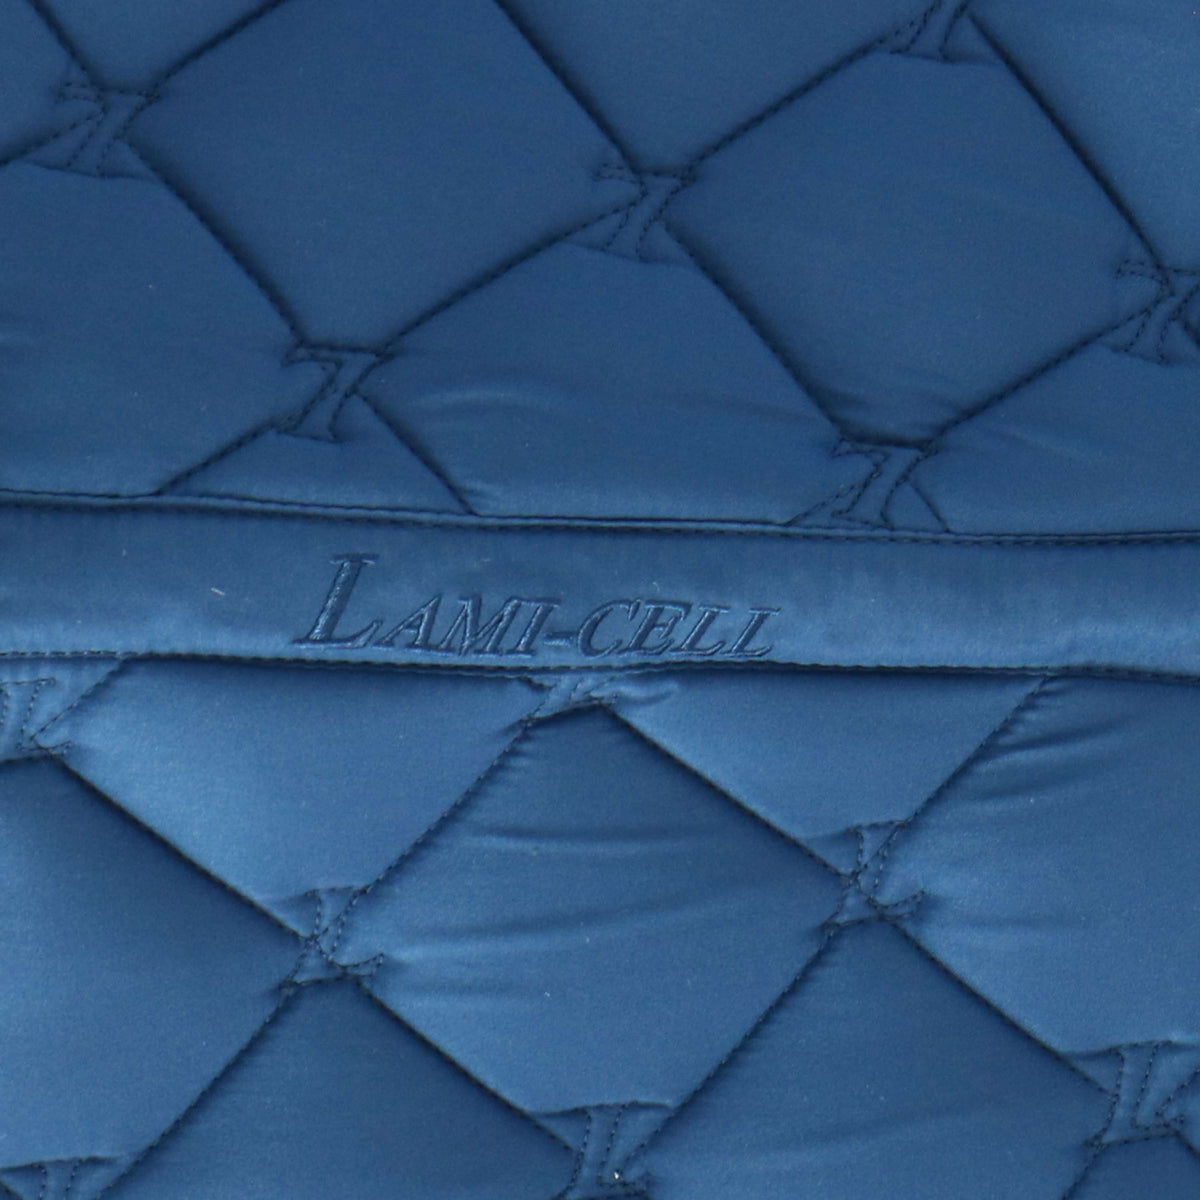 Lami-Cell Tapis de Selle Dressage Attol Blue